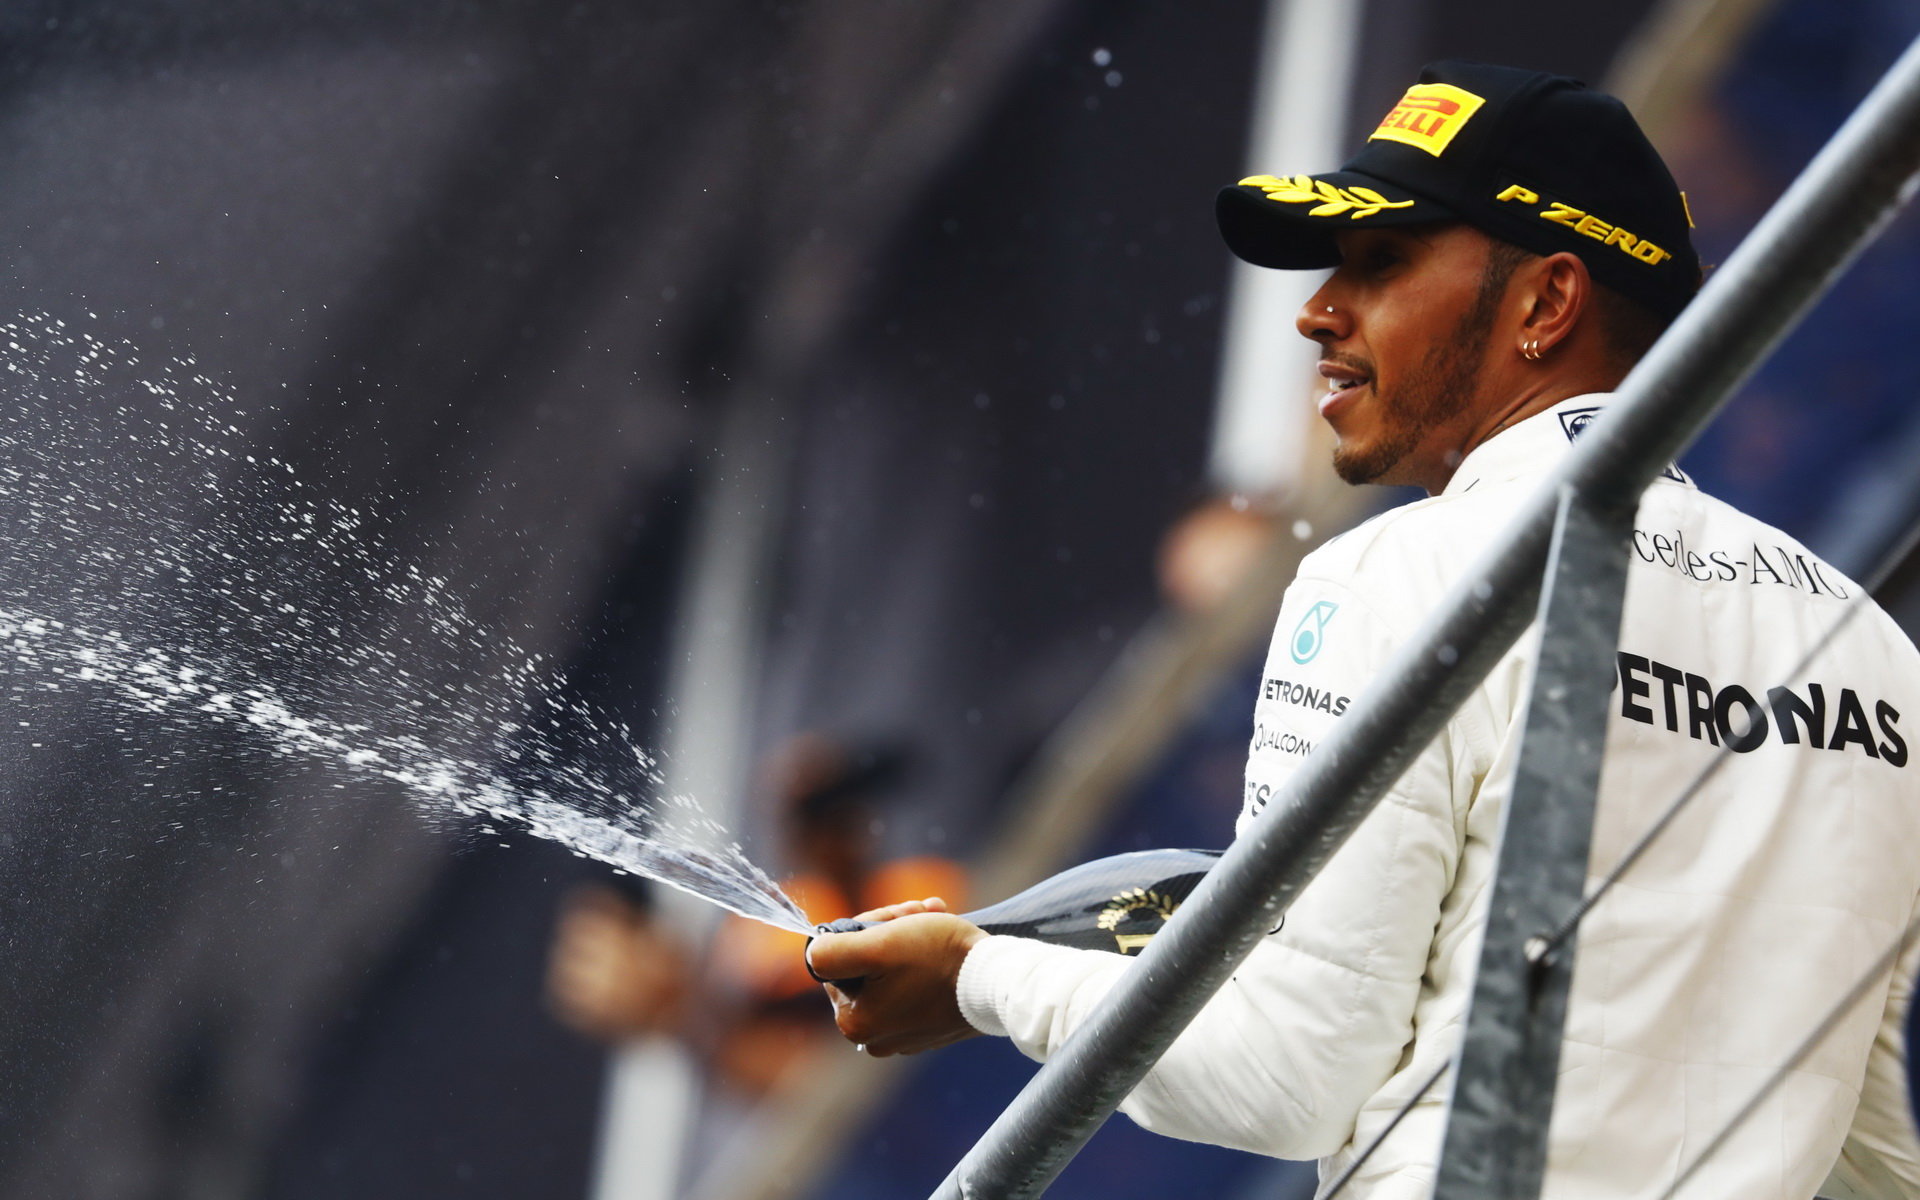 Hamilton slaví vítězství v Belgii a snížení Vettelova náskoku